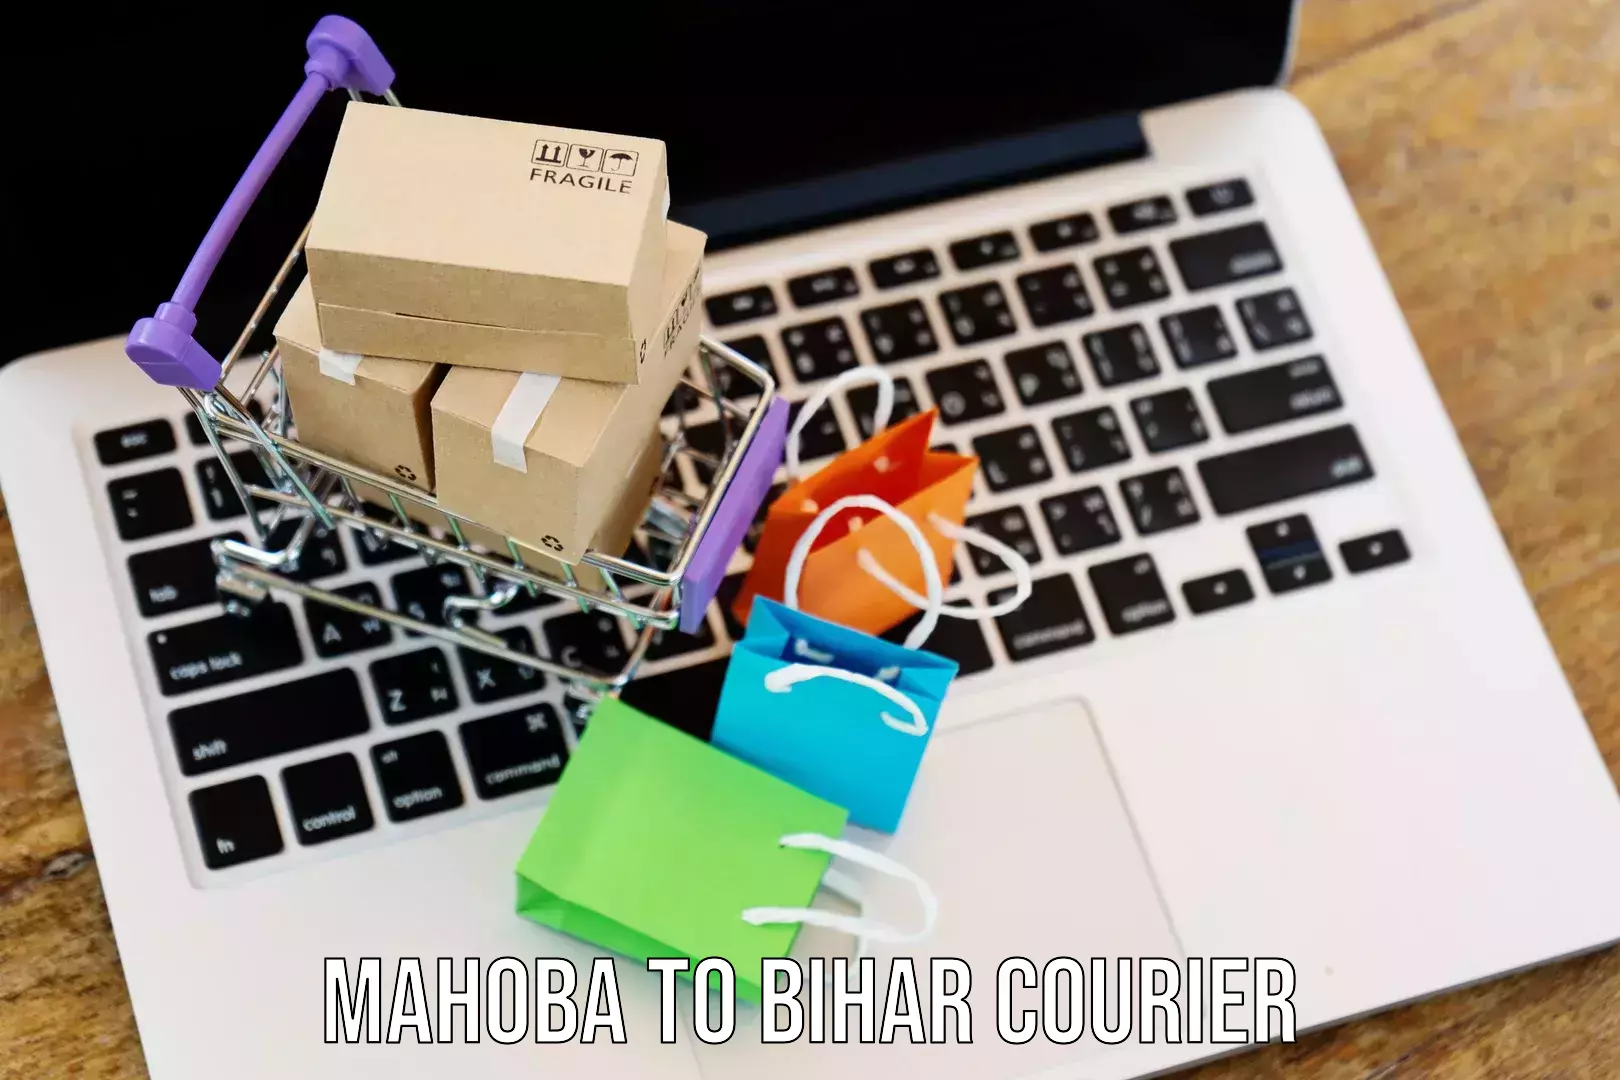 Ground shipping Mahoba to Aurangabad Bihar